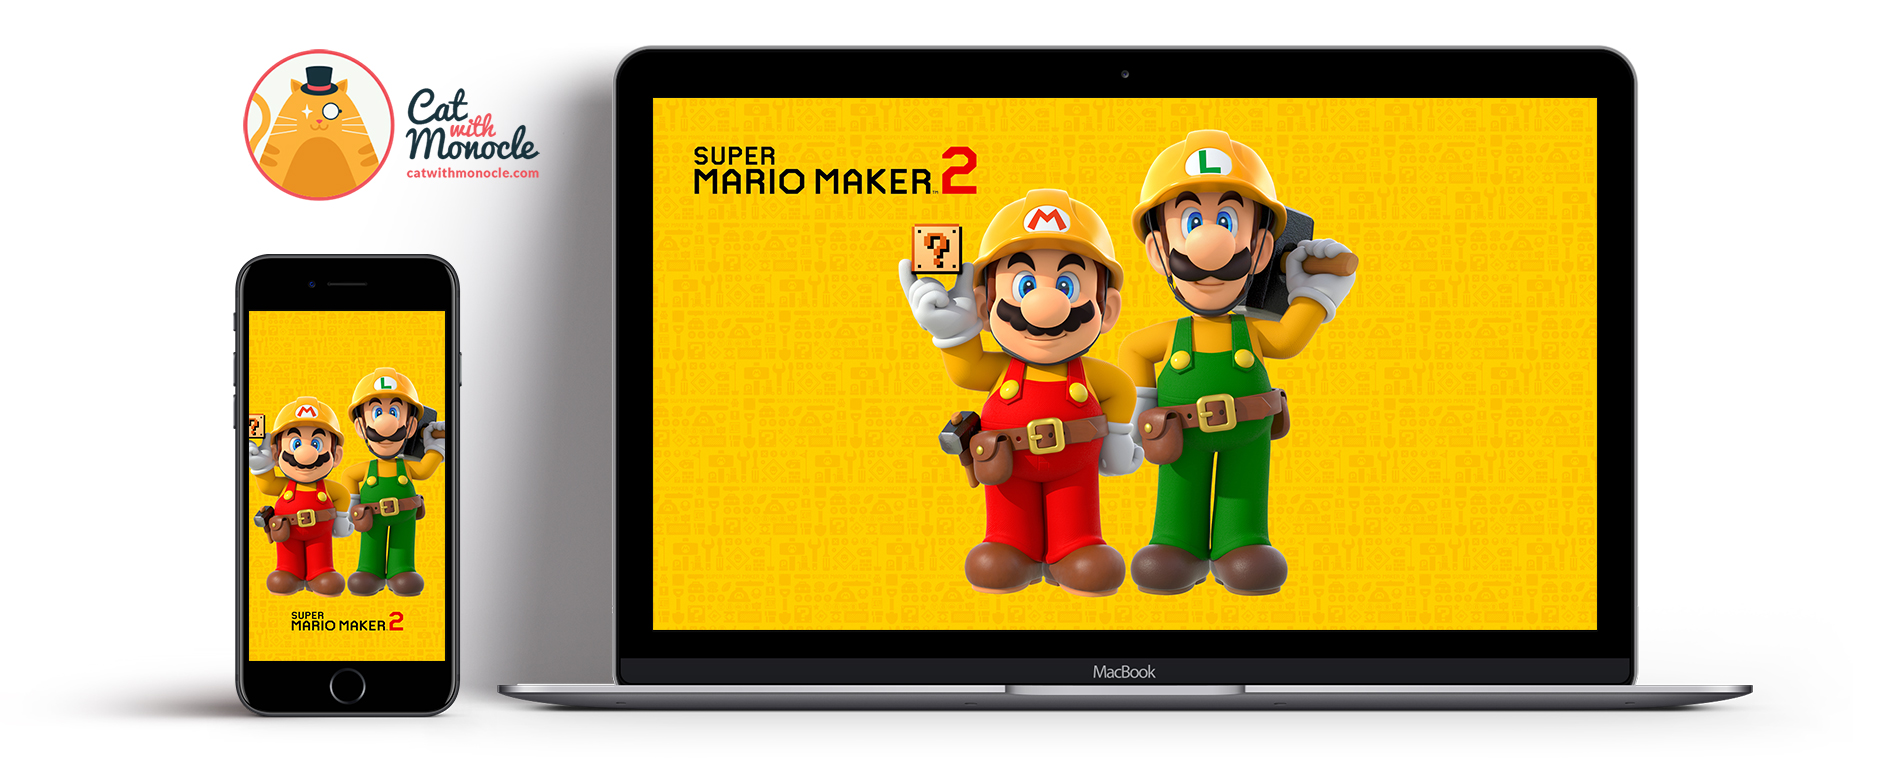 Super Mario Maker 2 - Super Mario Bros Version 3